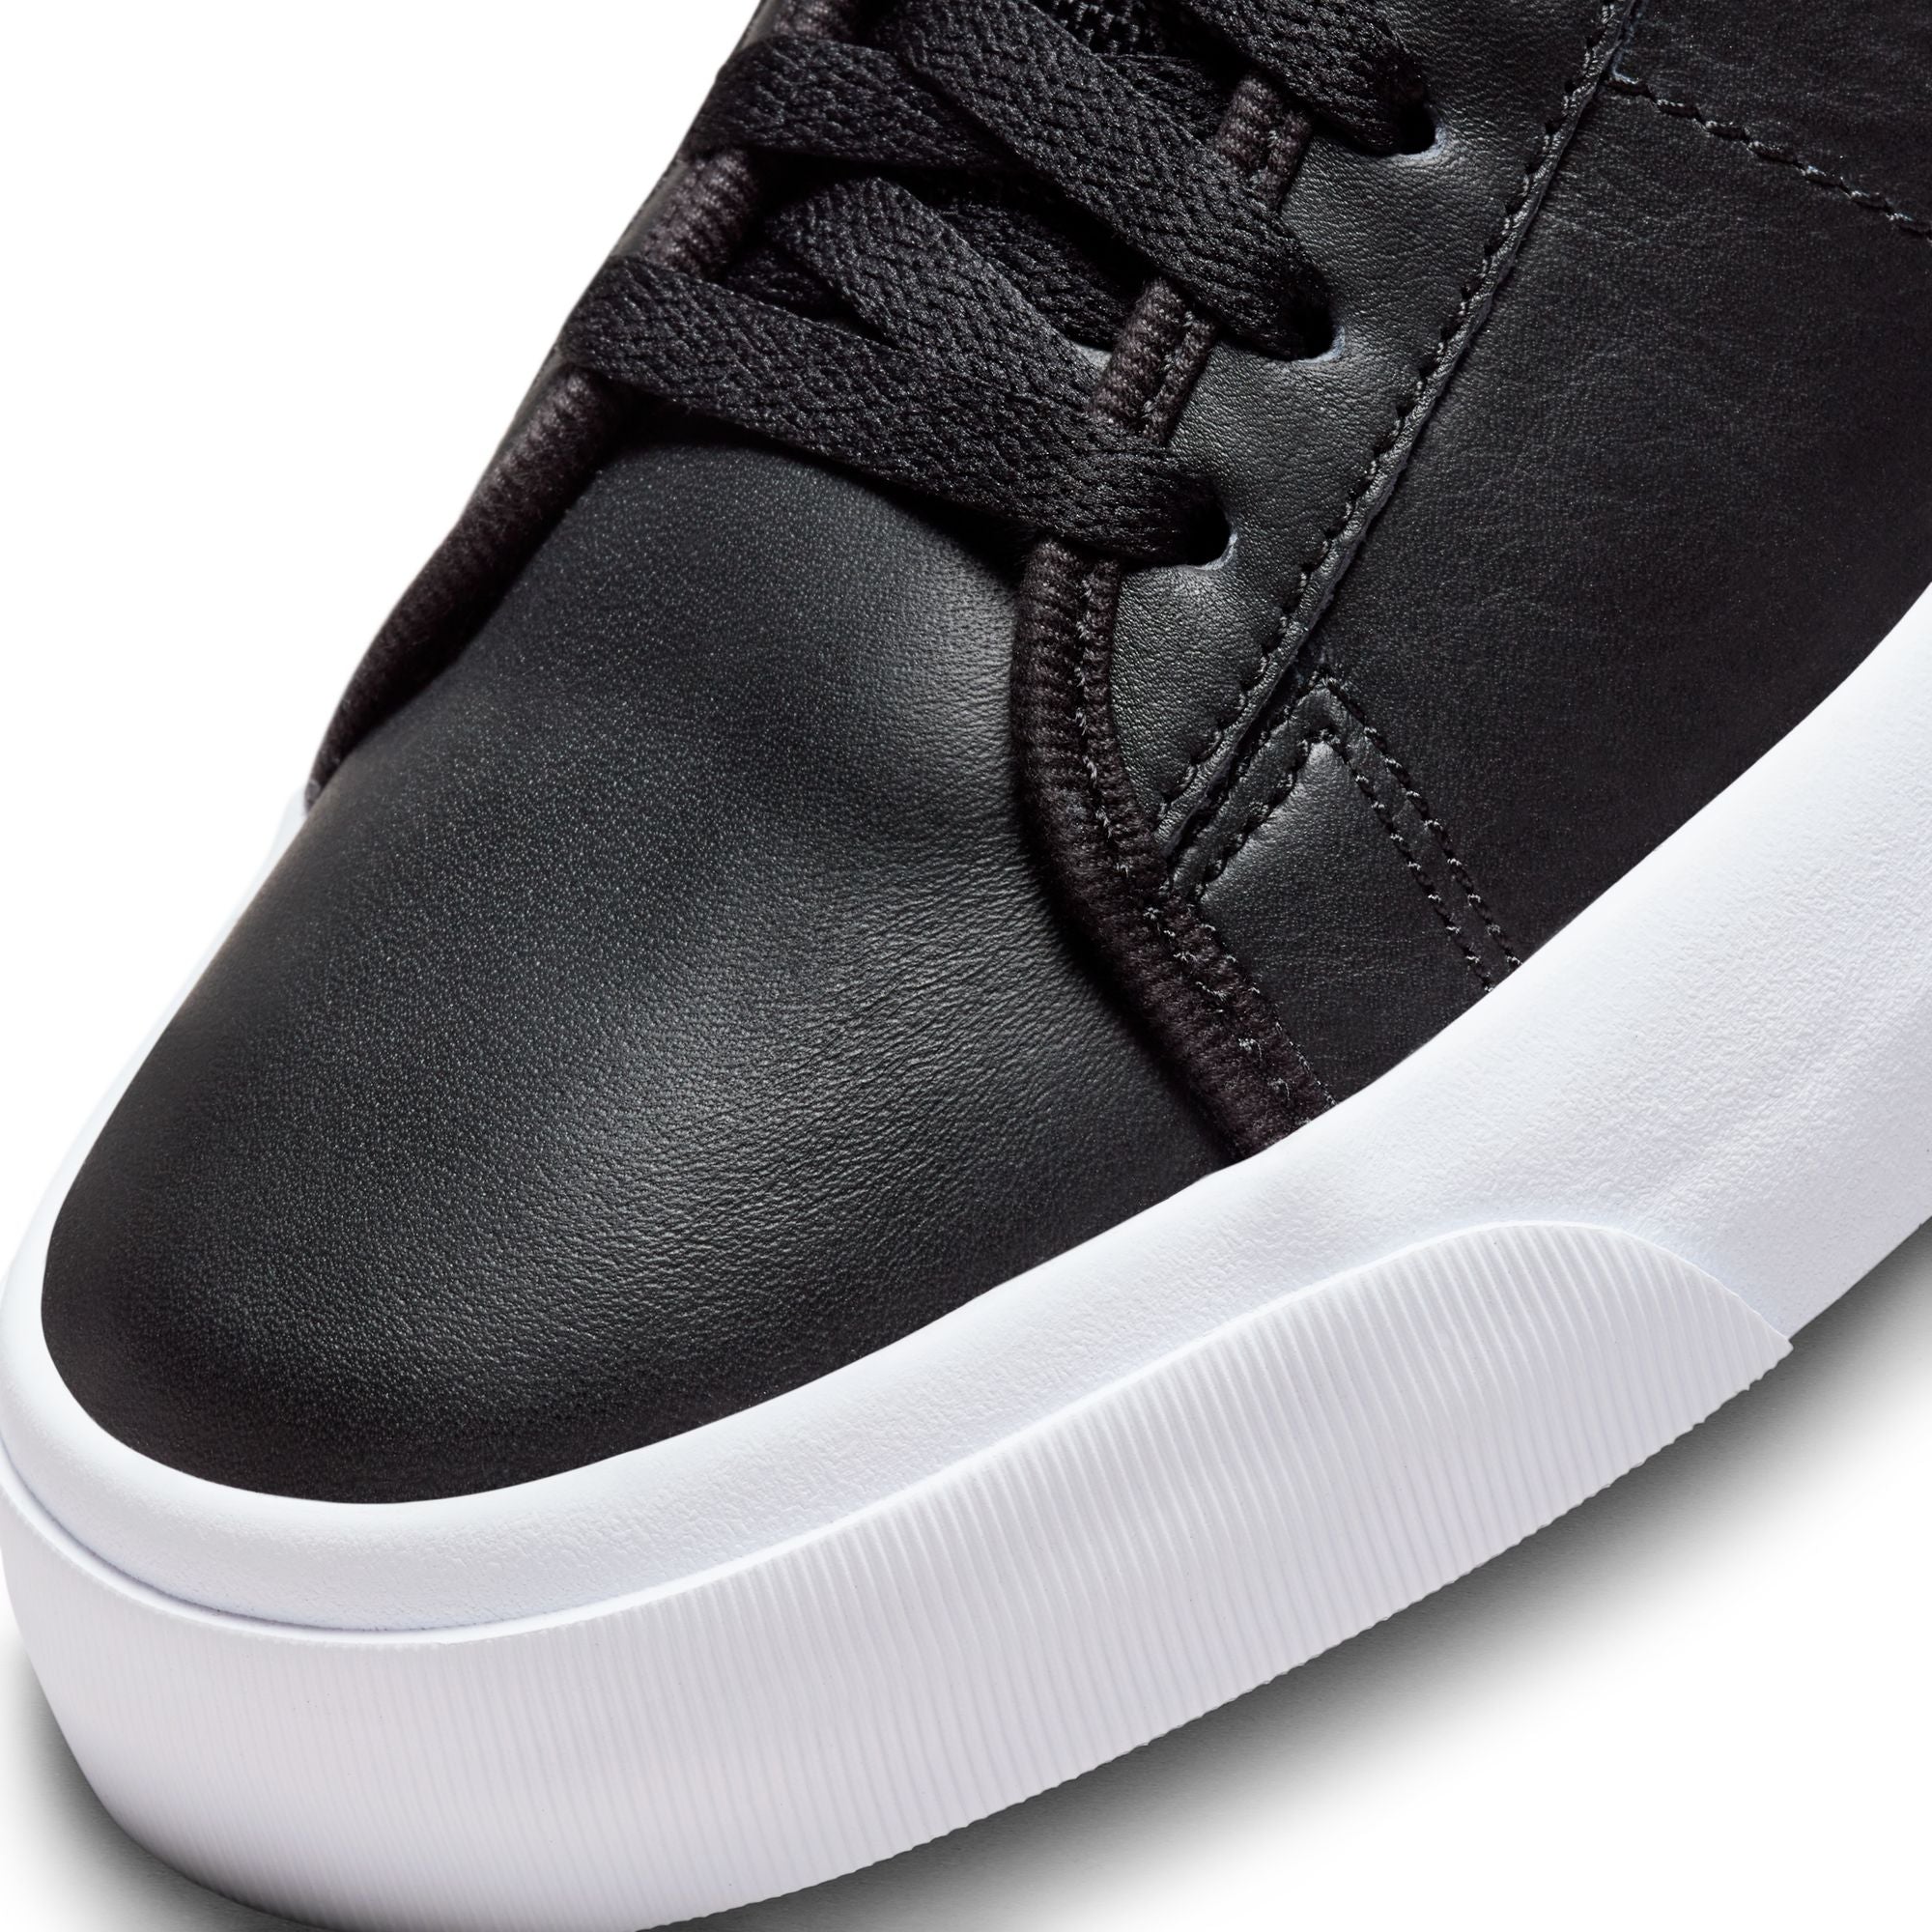 Black Grant Taylor Blazer Mid Pro Nike SB Skate Shoe Detail